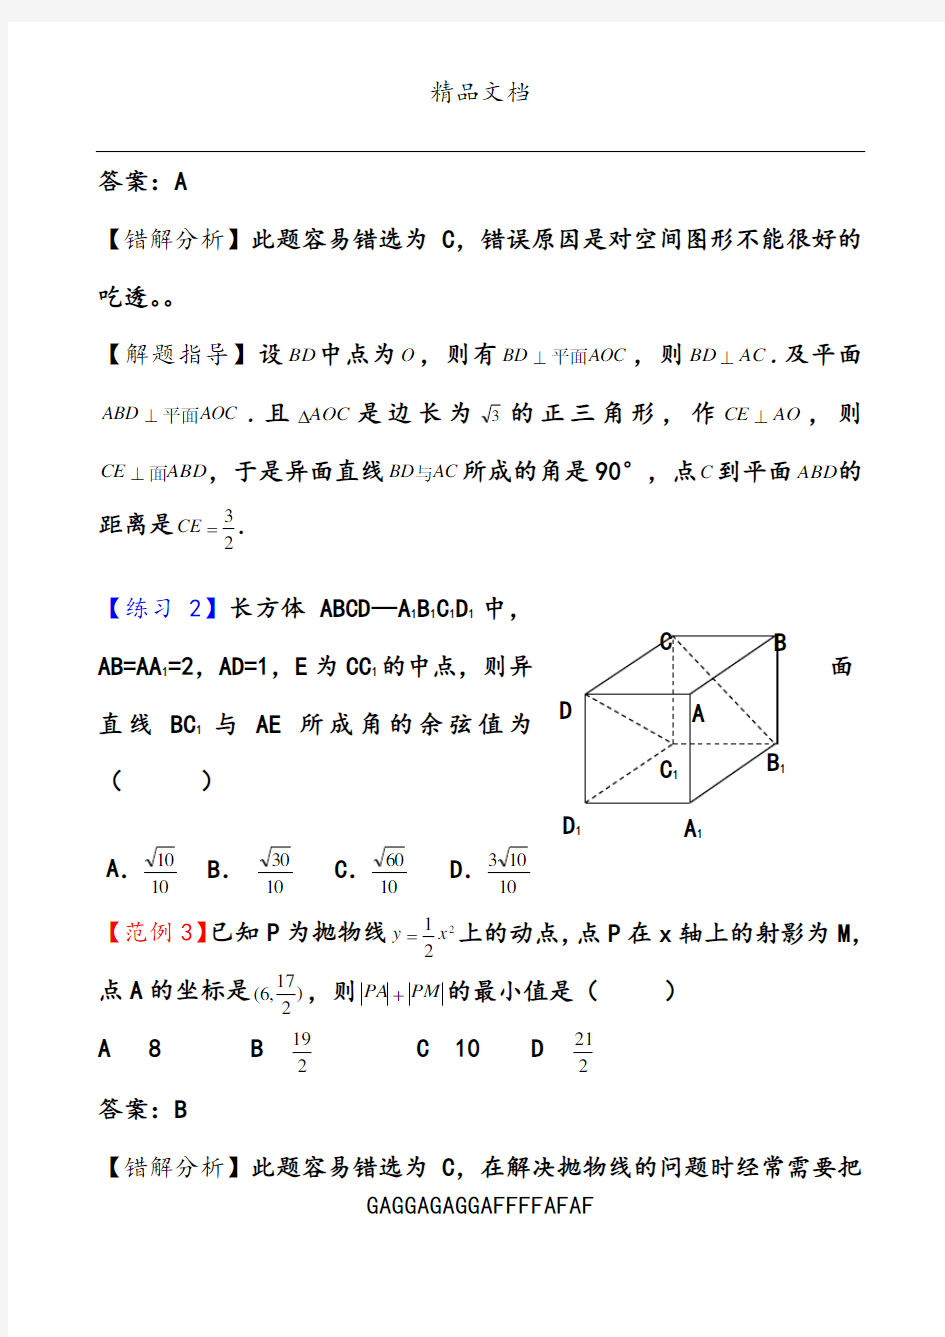 高考数学易错题解题方法(4)   共7套  完整